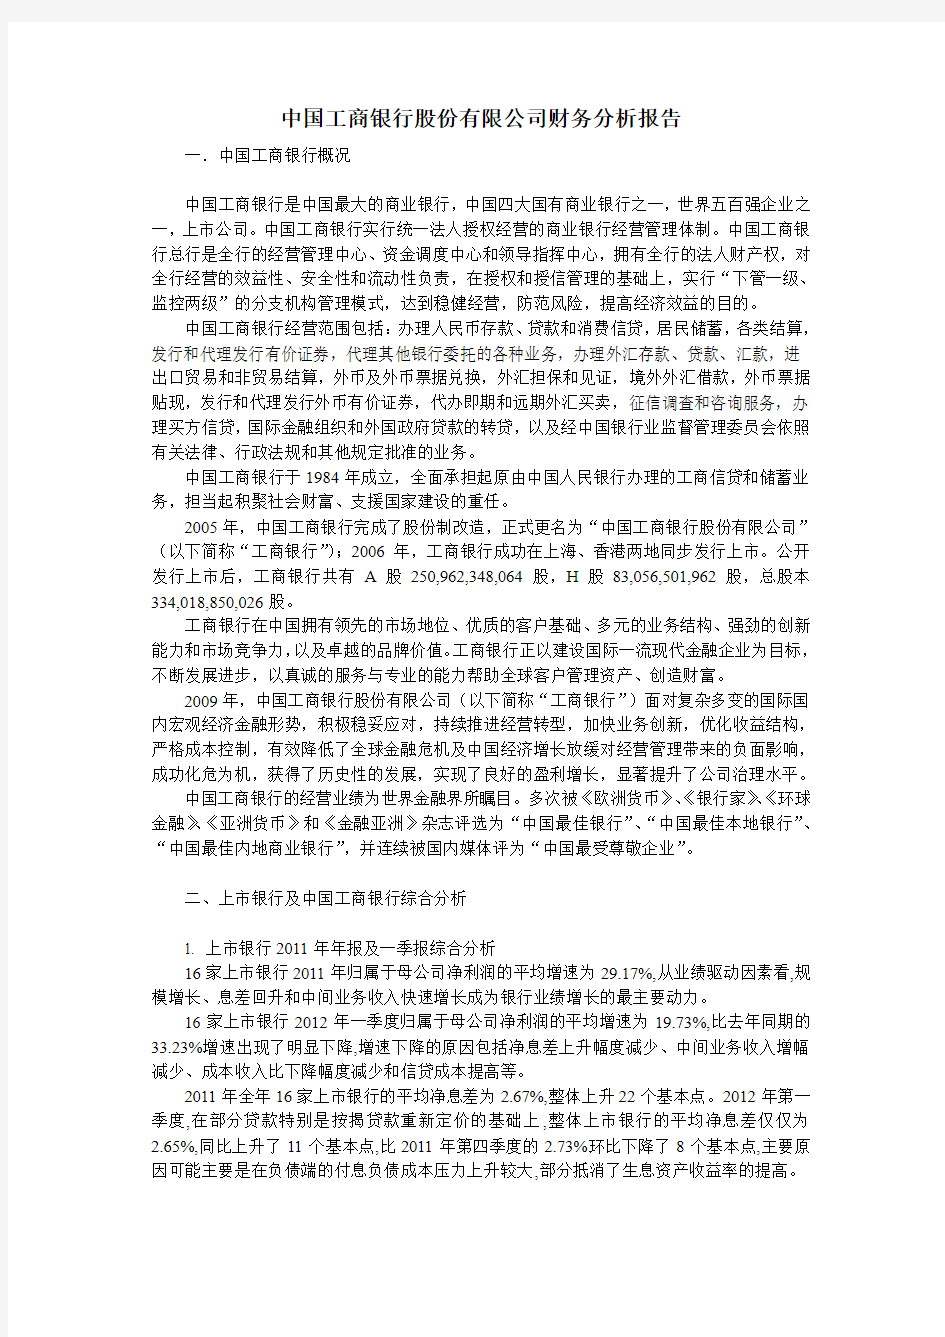 中国工商银行股份有限公司财务分析报告(2012)